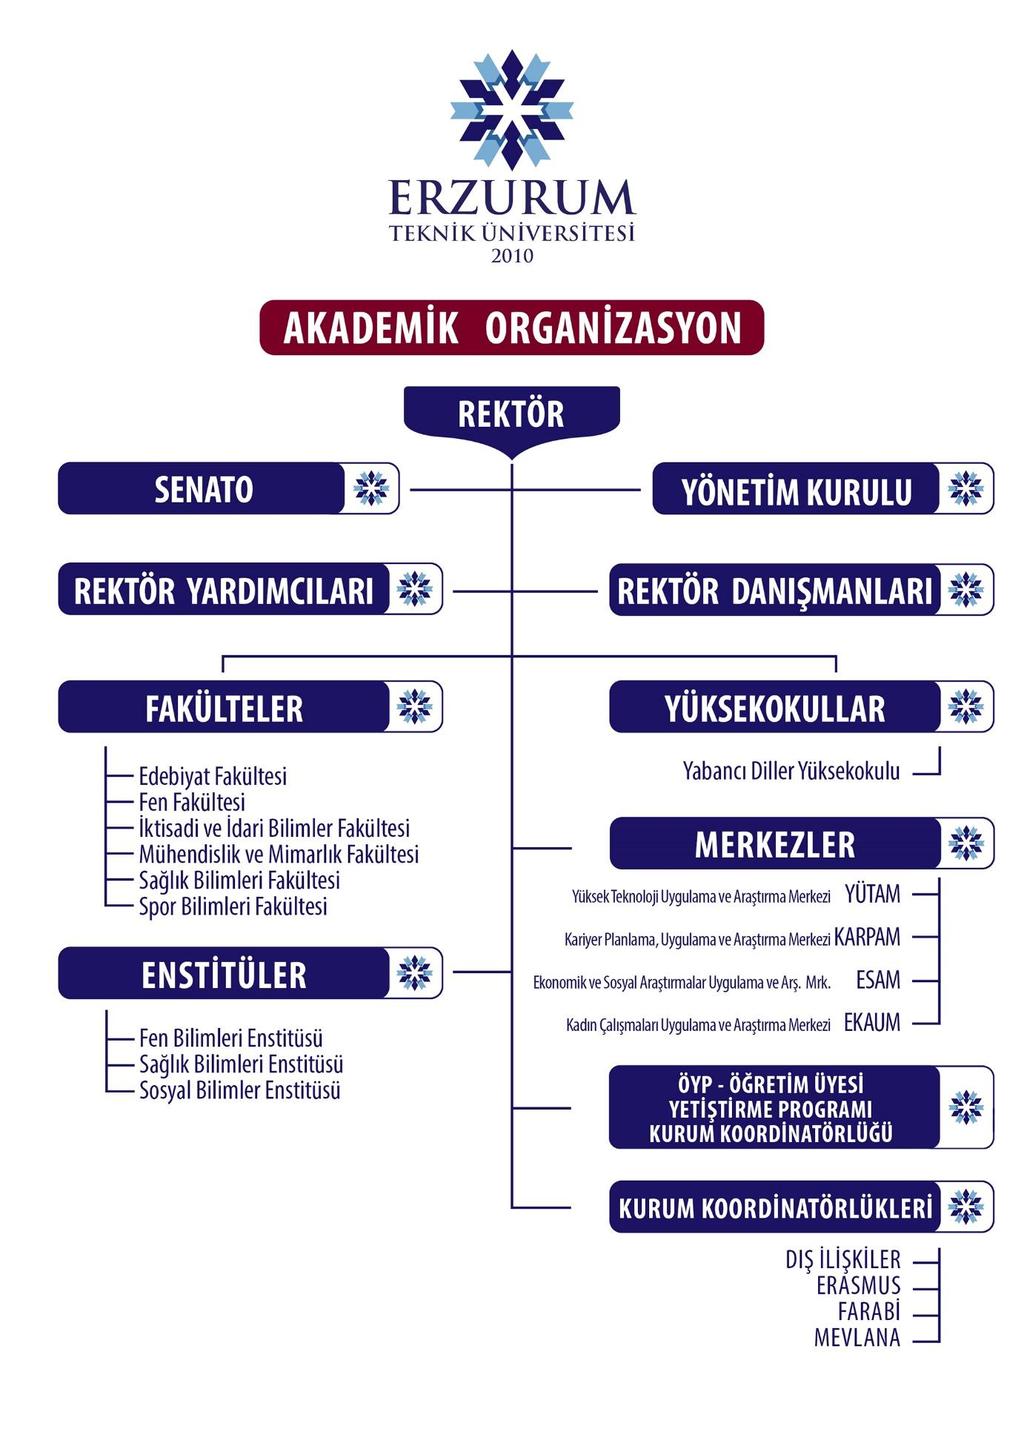 Şekil 1: Erzurum Teknik Üniversitesi